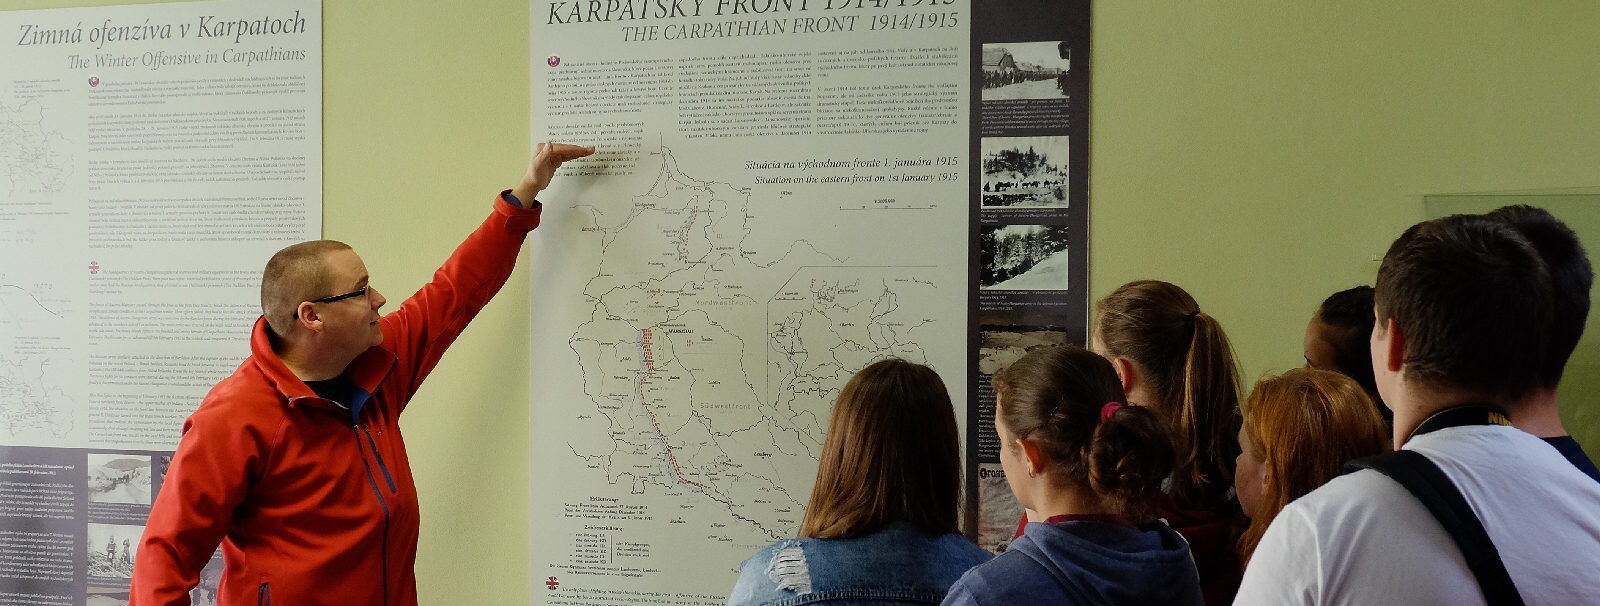 Muzeálna expozícia "Karpatský front 1914/1915" v Nižnej Polianke